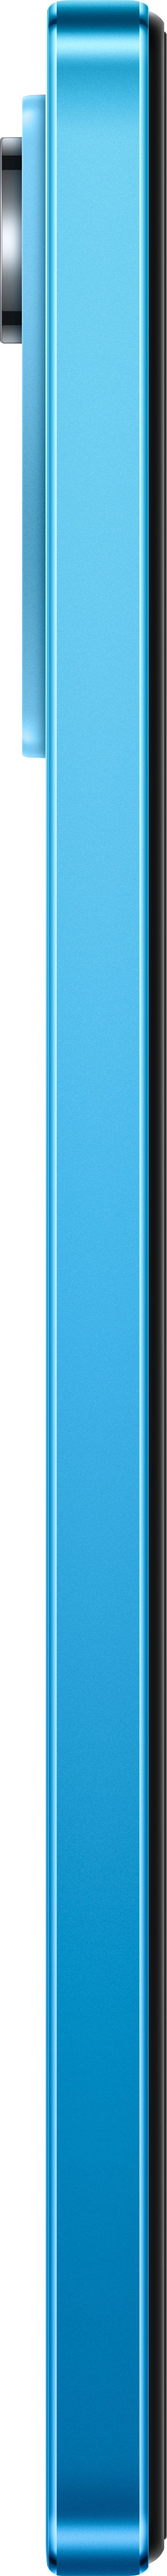 12 128 SIM Glacier Pro XIAOMI Blue GB Note Dual Redmi